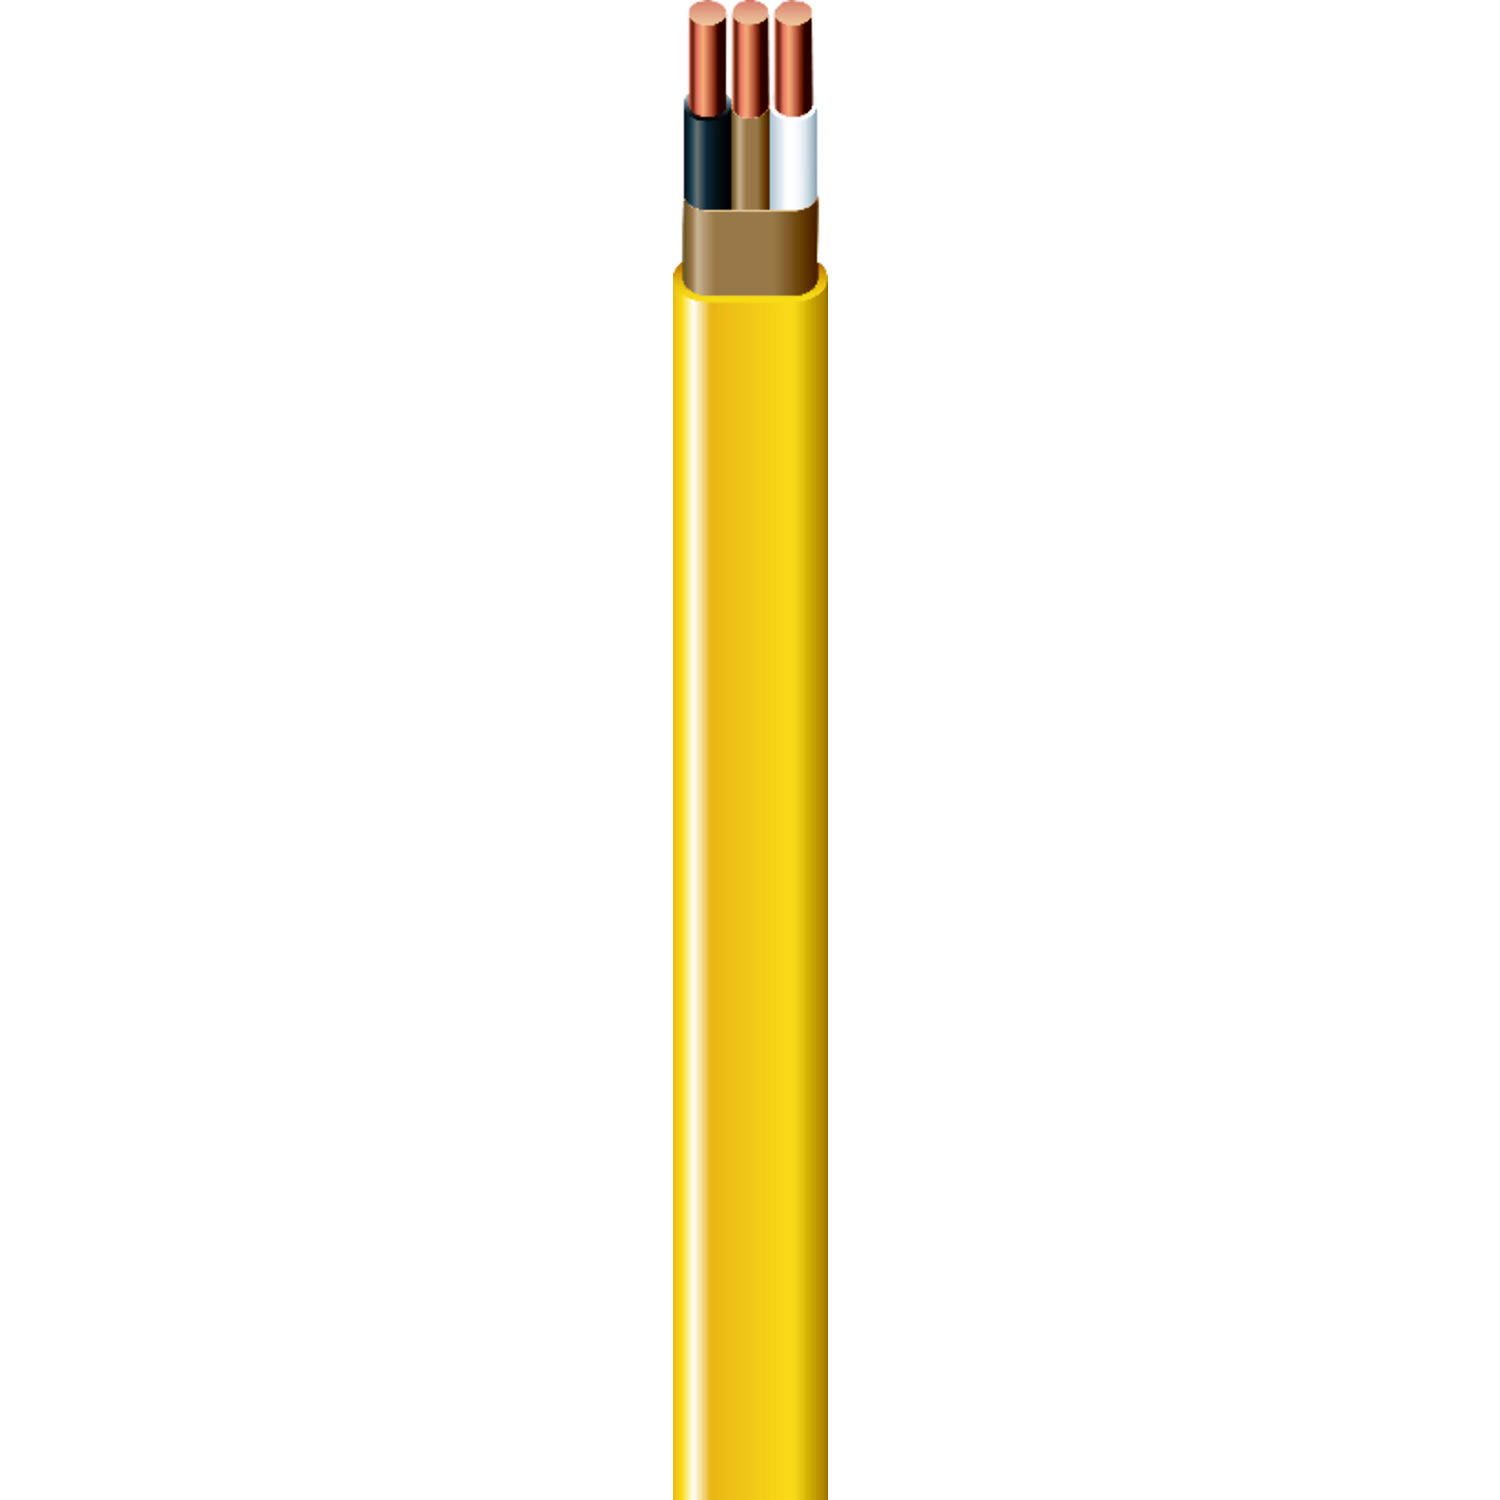 Romex NM-B Wire - Yellow